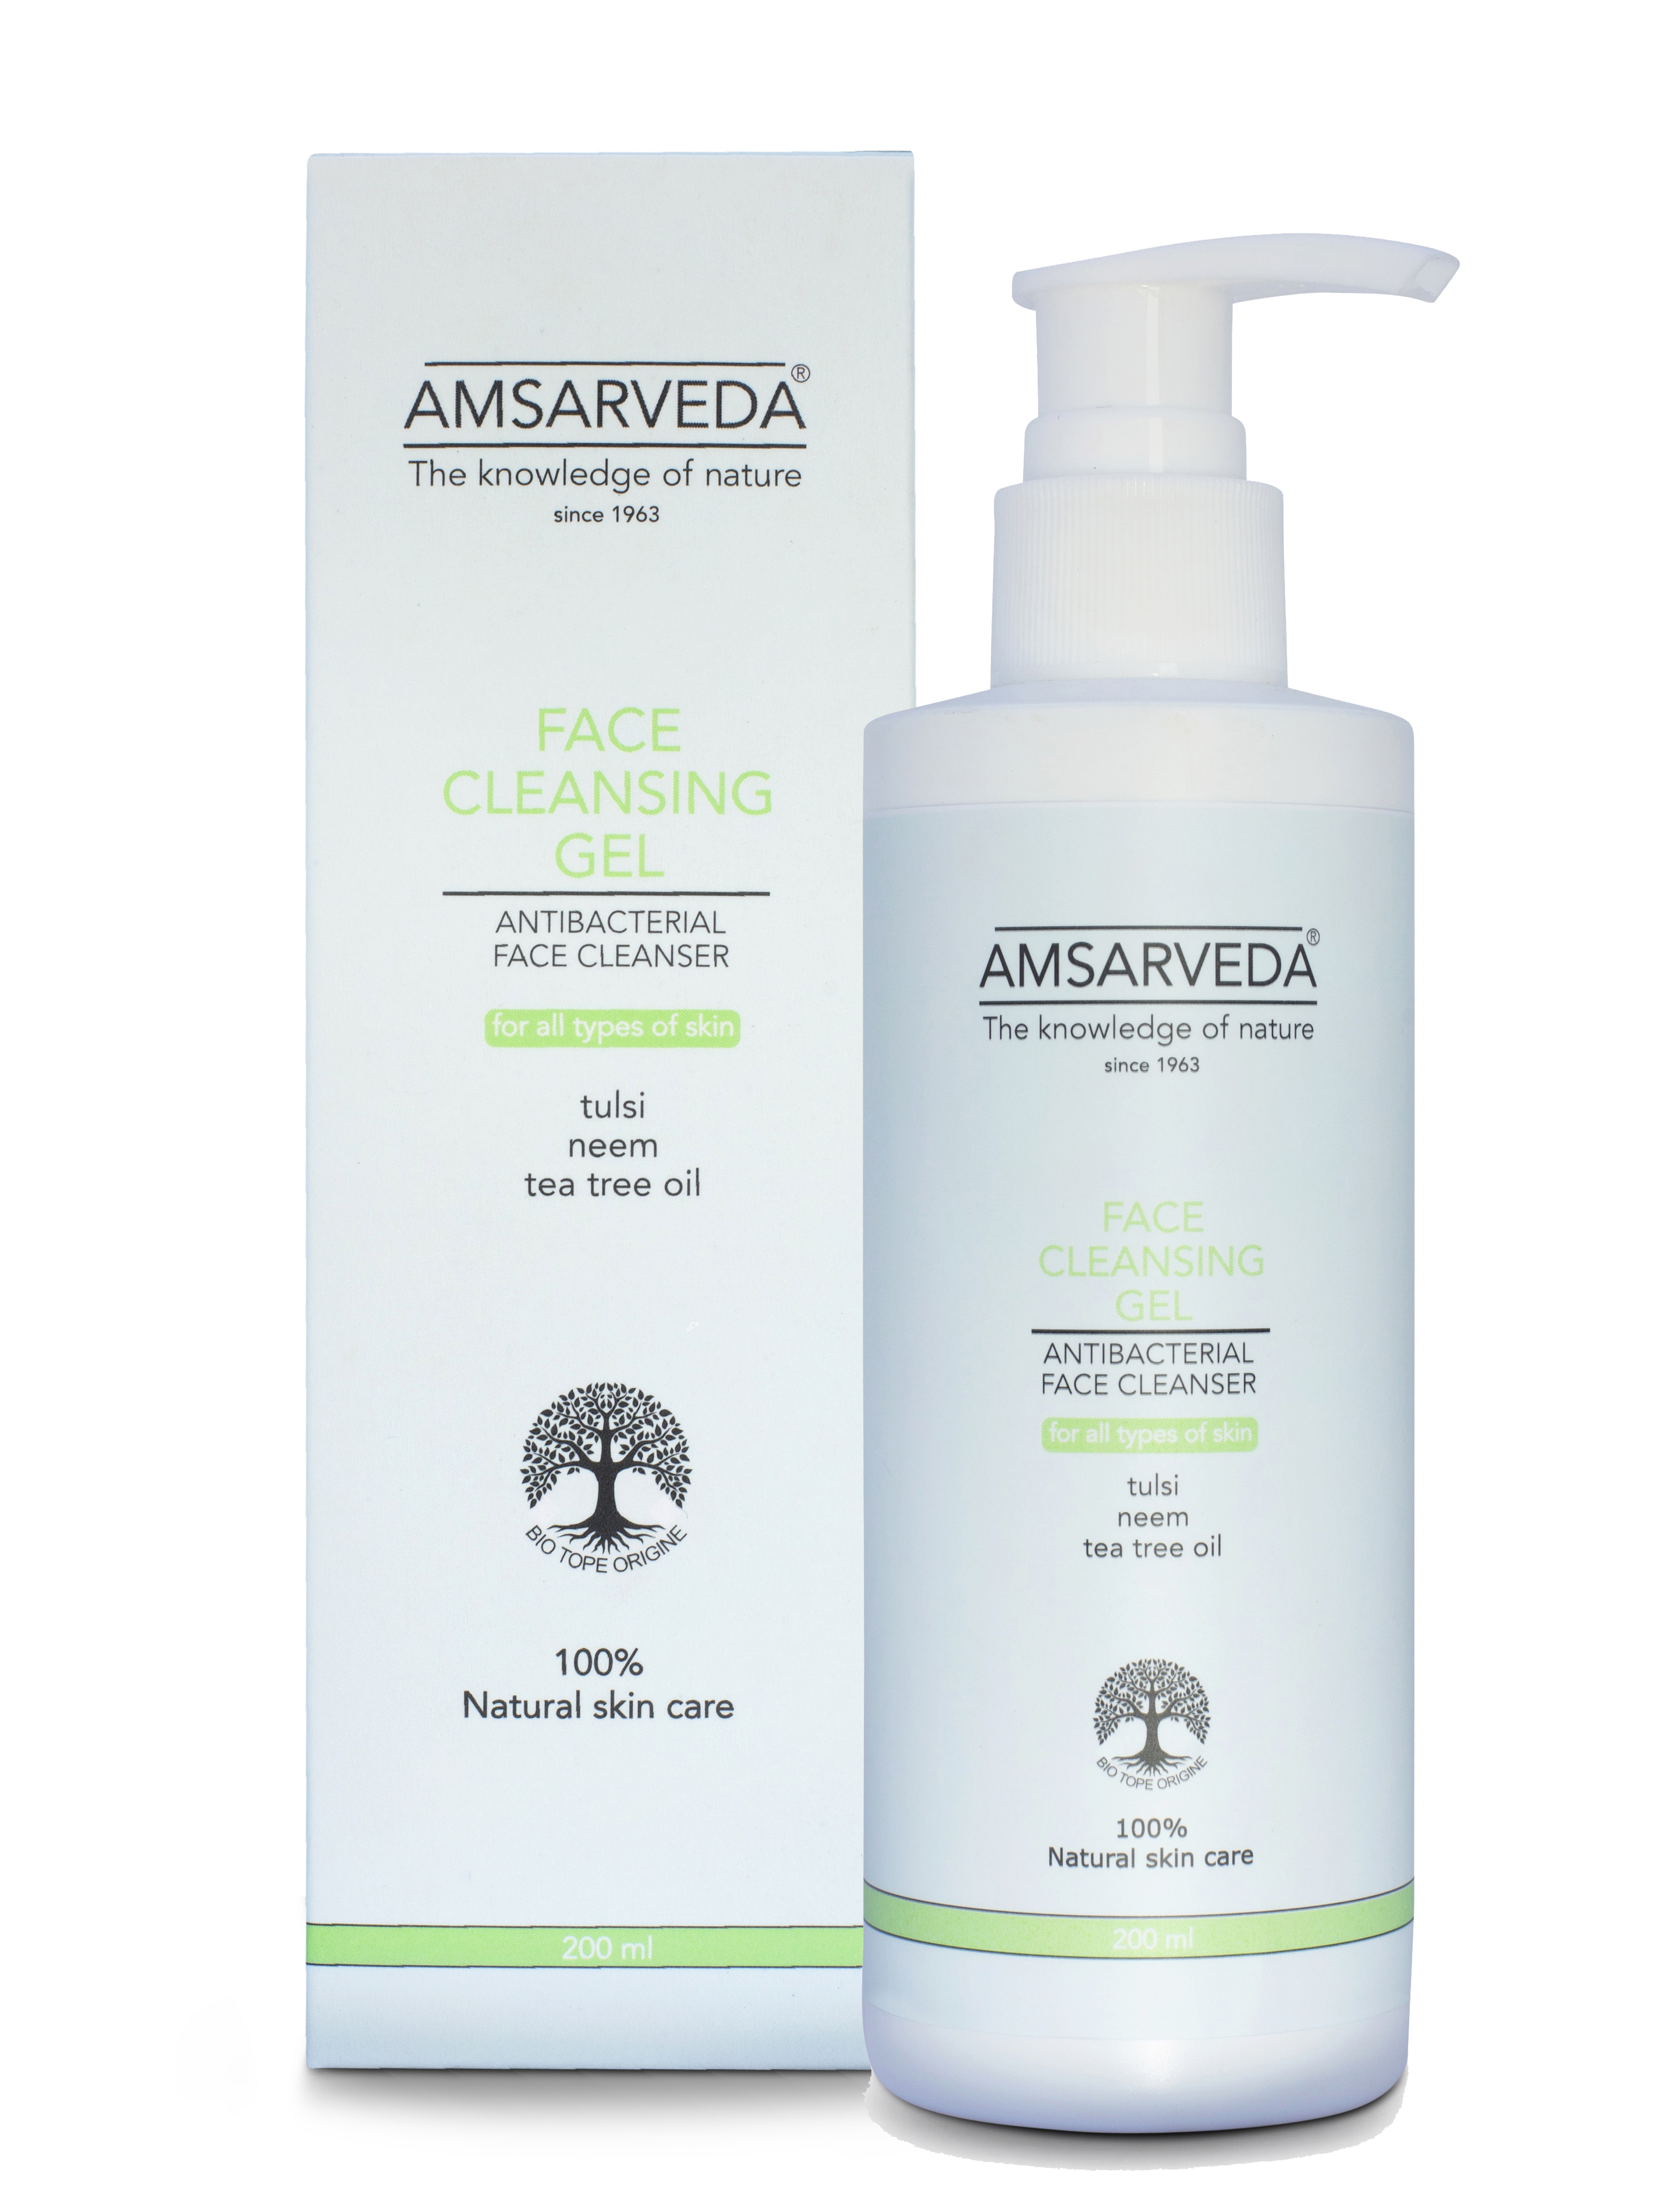 Купить Очищающий гель AMSARVEDA для лица с экстрактами нима и тулси для всех типов кожи, 200 мл, Face Cleansing Gel